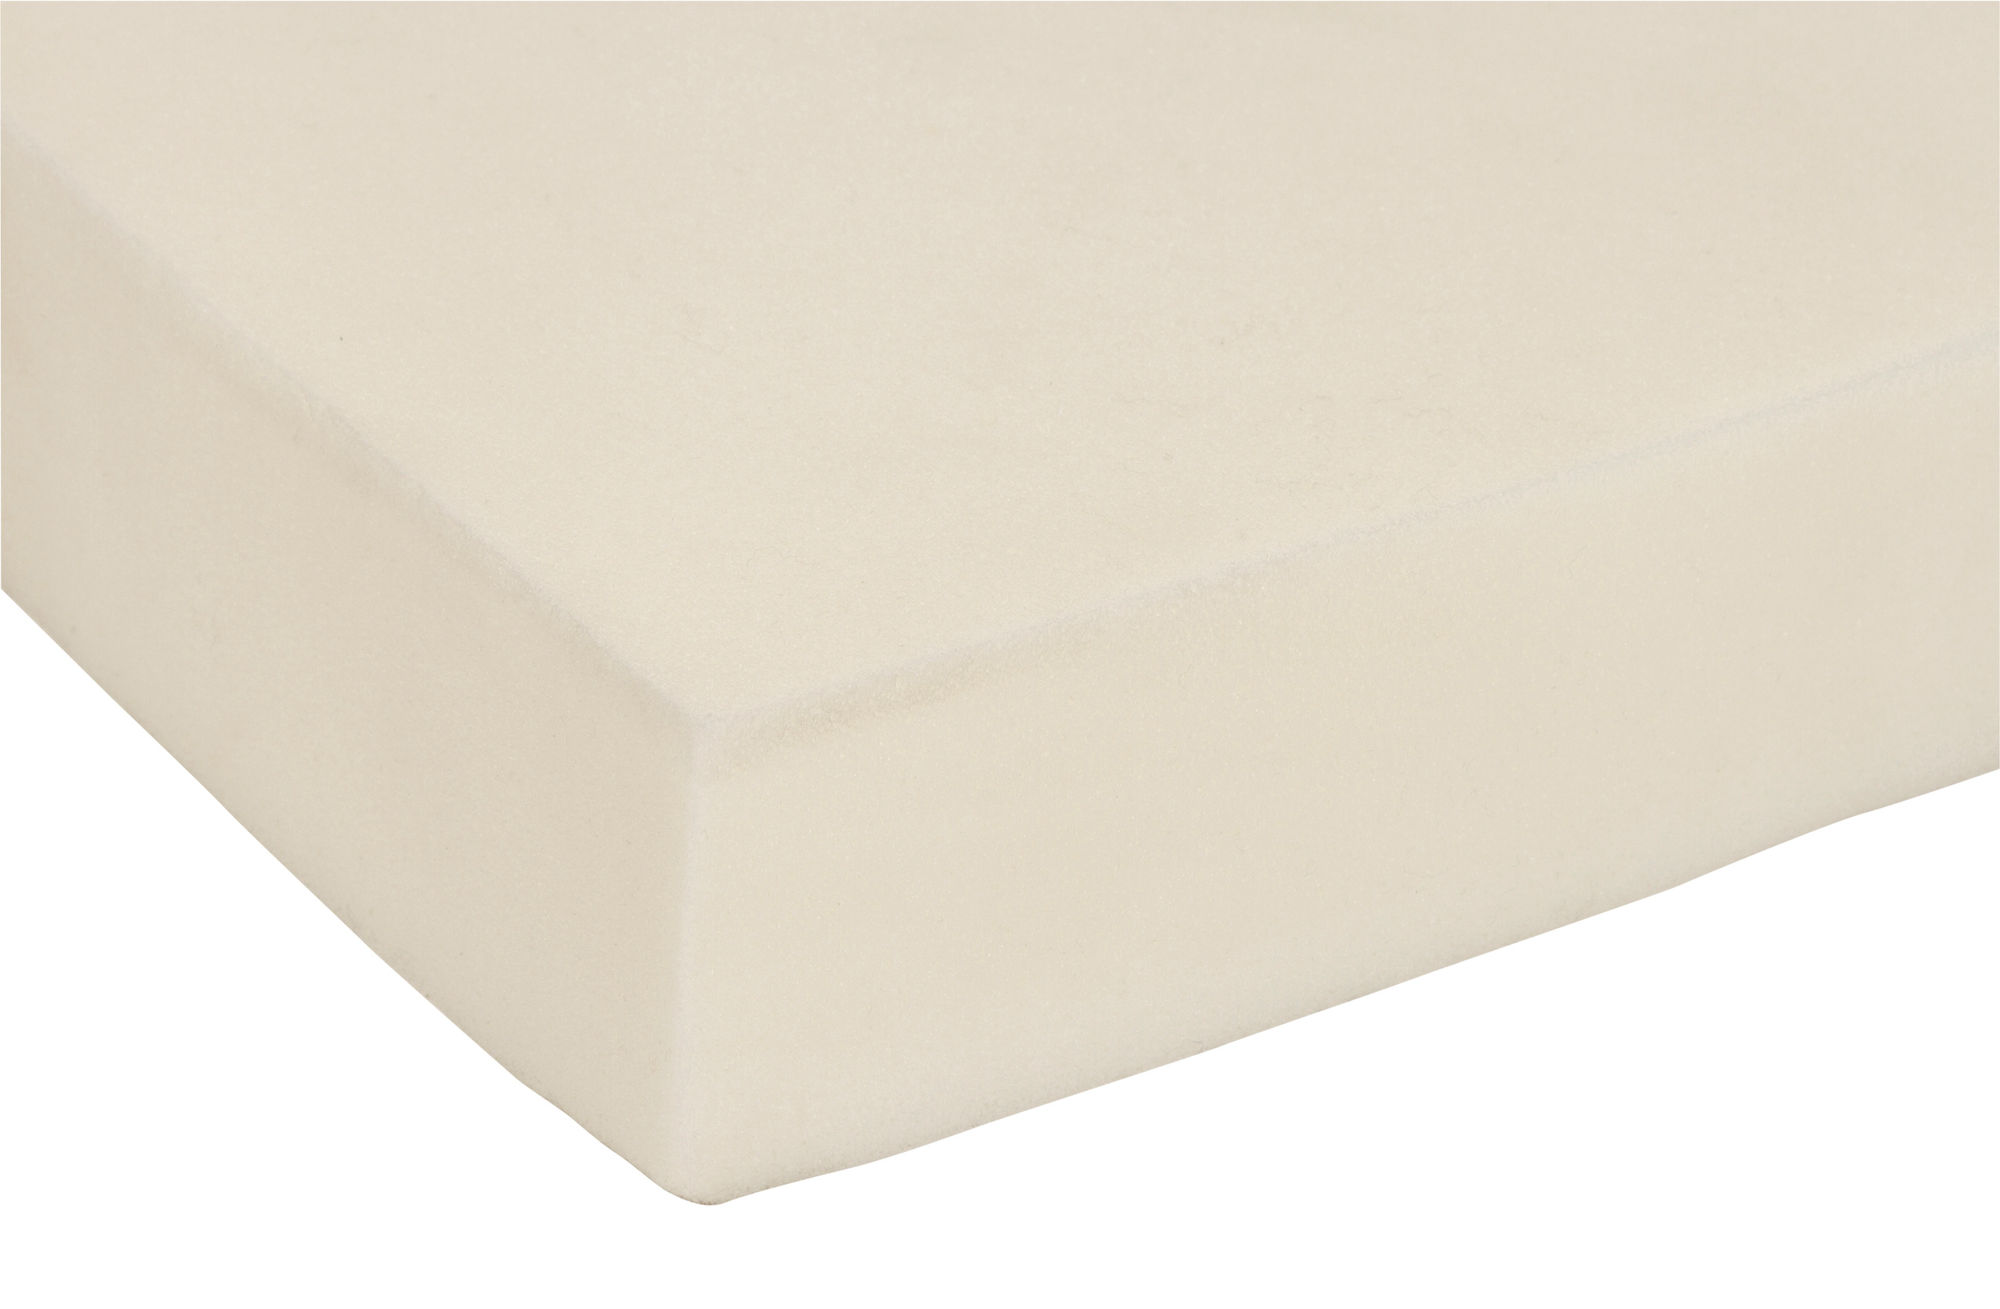 Memory-Foam Matratze 60x100cm beige/anthrazit